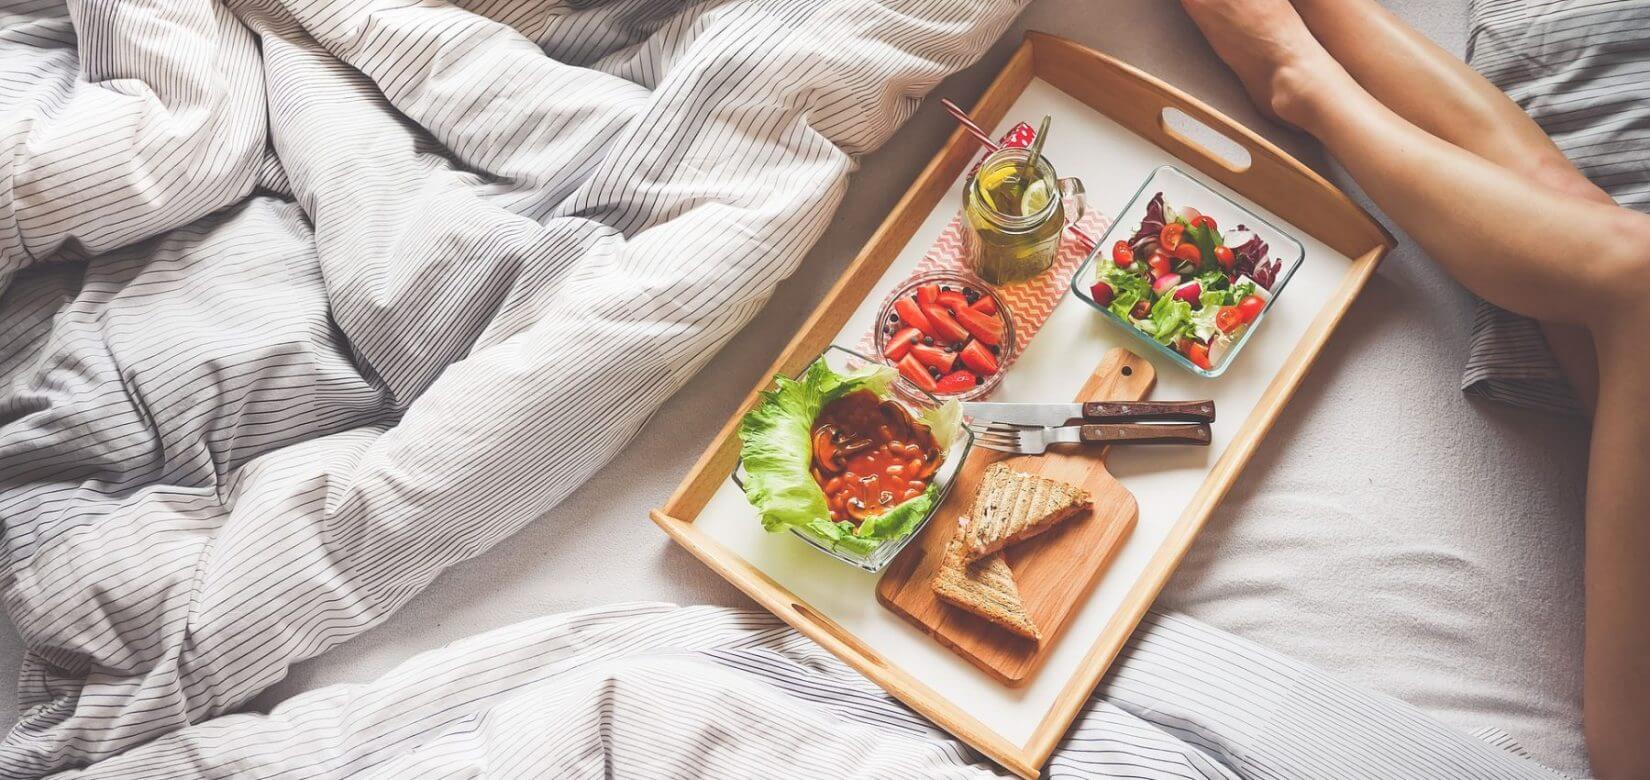 7 ιδέες για υγιεινό & θρεπτικό πρωινό σε 10 λεπτά για μικρούς και μεγάλους